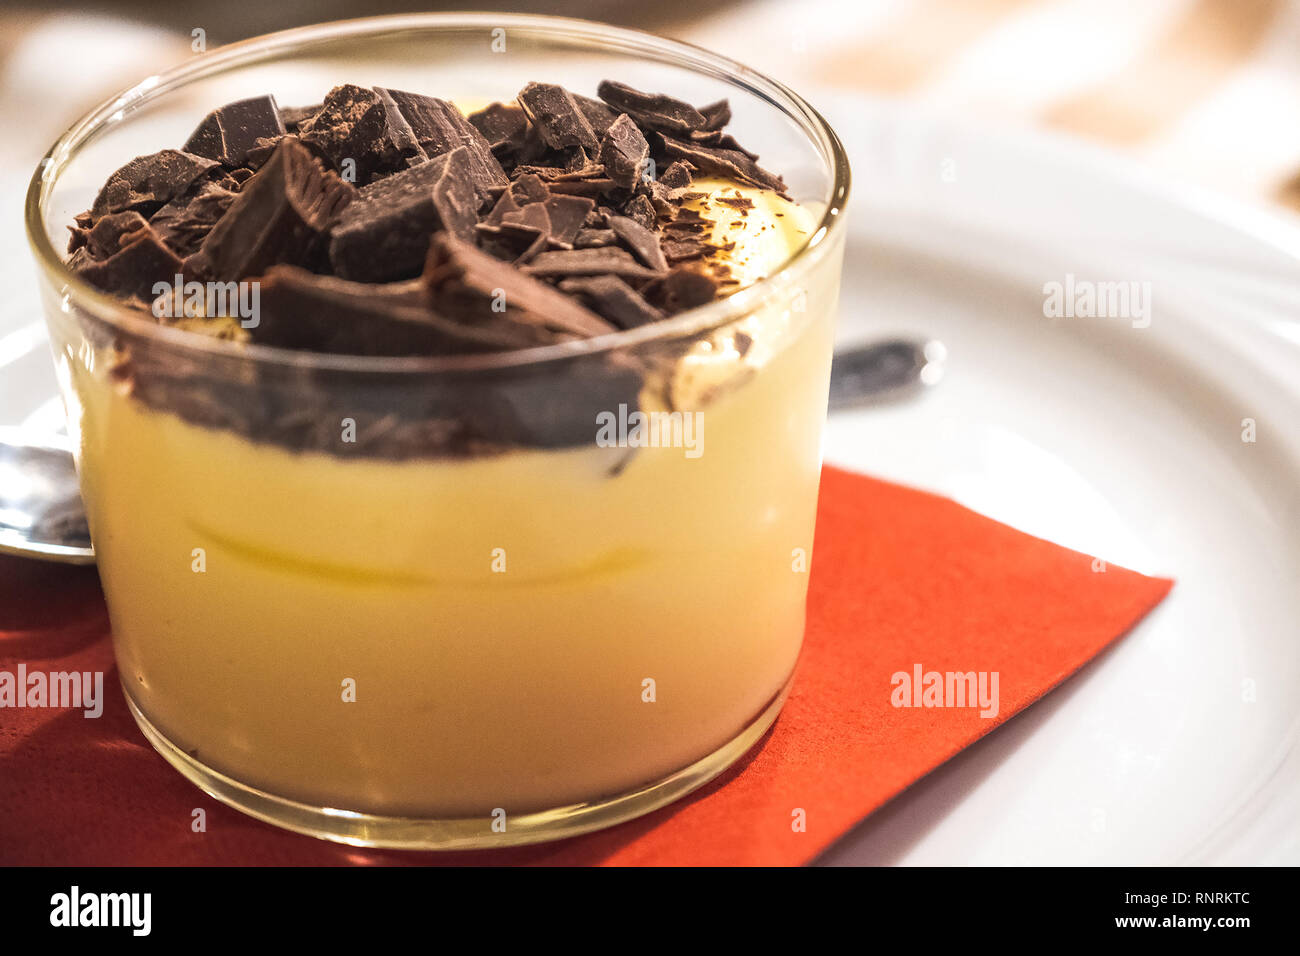 Partie de Mascarpone con Scaglie di Cioccolato ou tasse de mascarpone avec copeaux de chocolat dessert traditionnel italien Banque D'Images